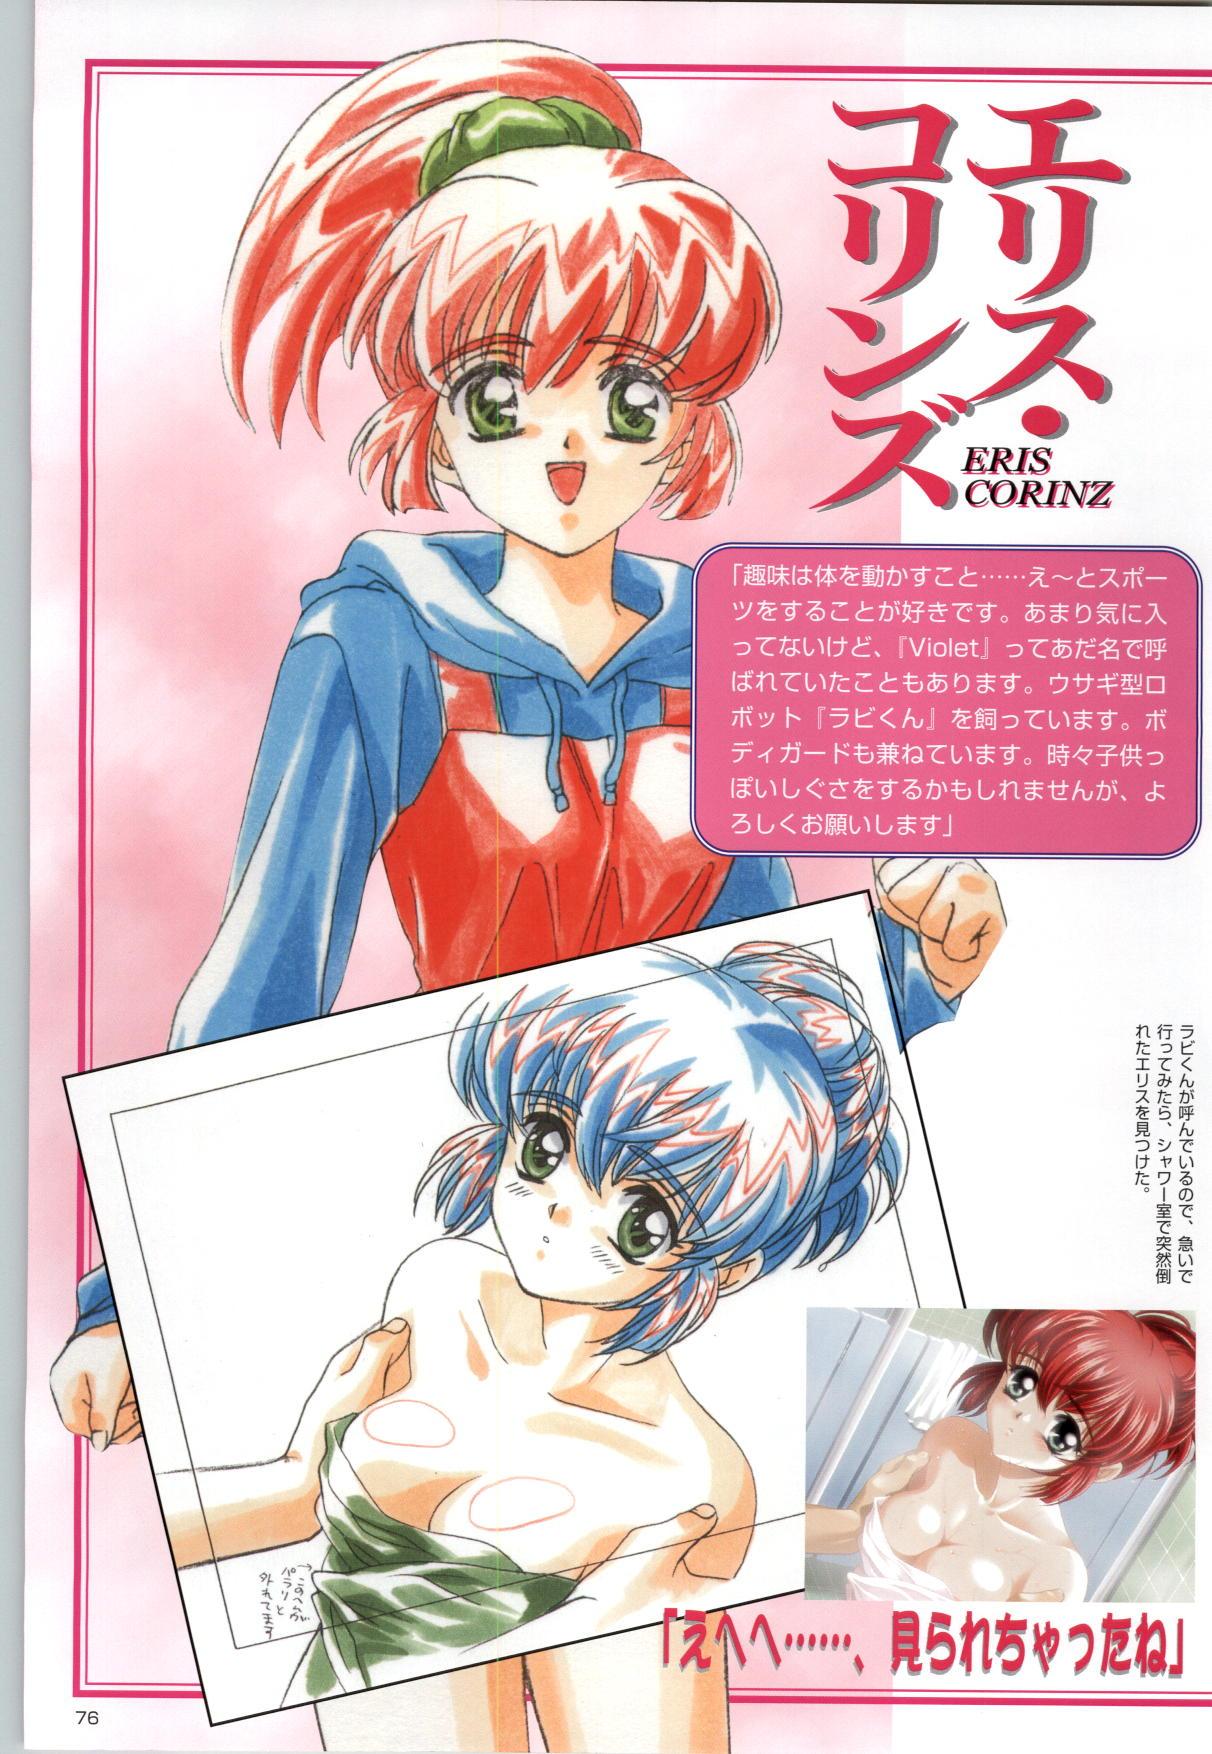 [Kinmedai Pink] ACTRESS Collection Kizuna + Seduce ~Yuuwaku~ + Hoshi no Pierce Computer Graphics & Original Pictures 76